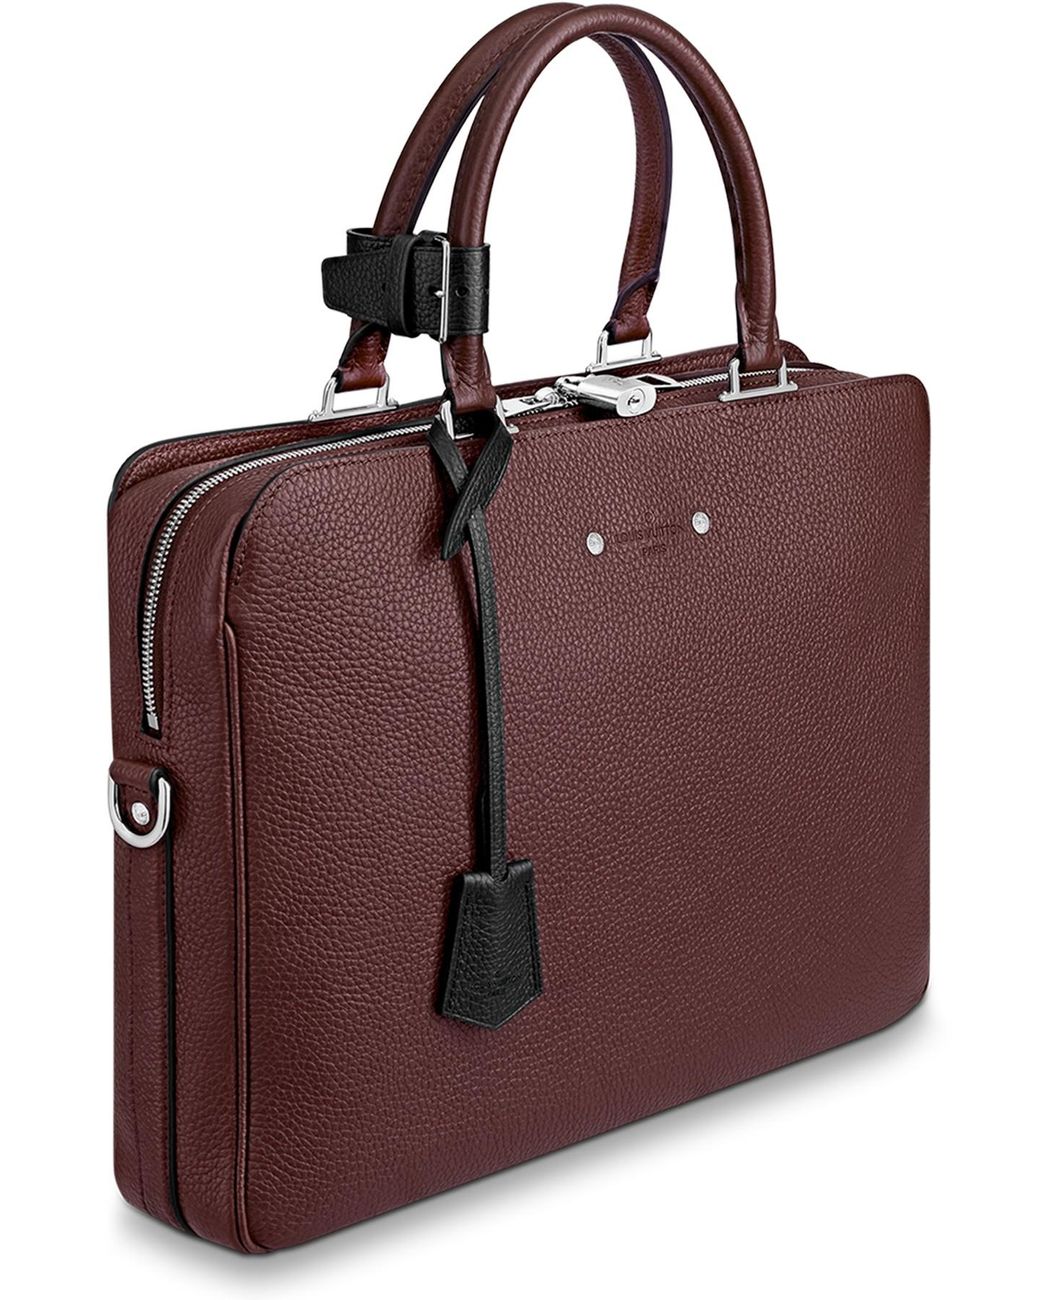 Louis Vuitton Briefcases for Men - Poshmark